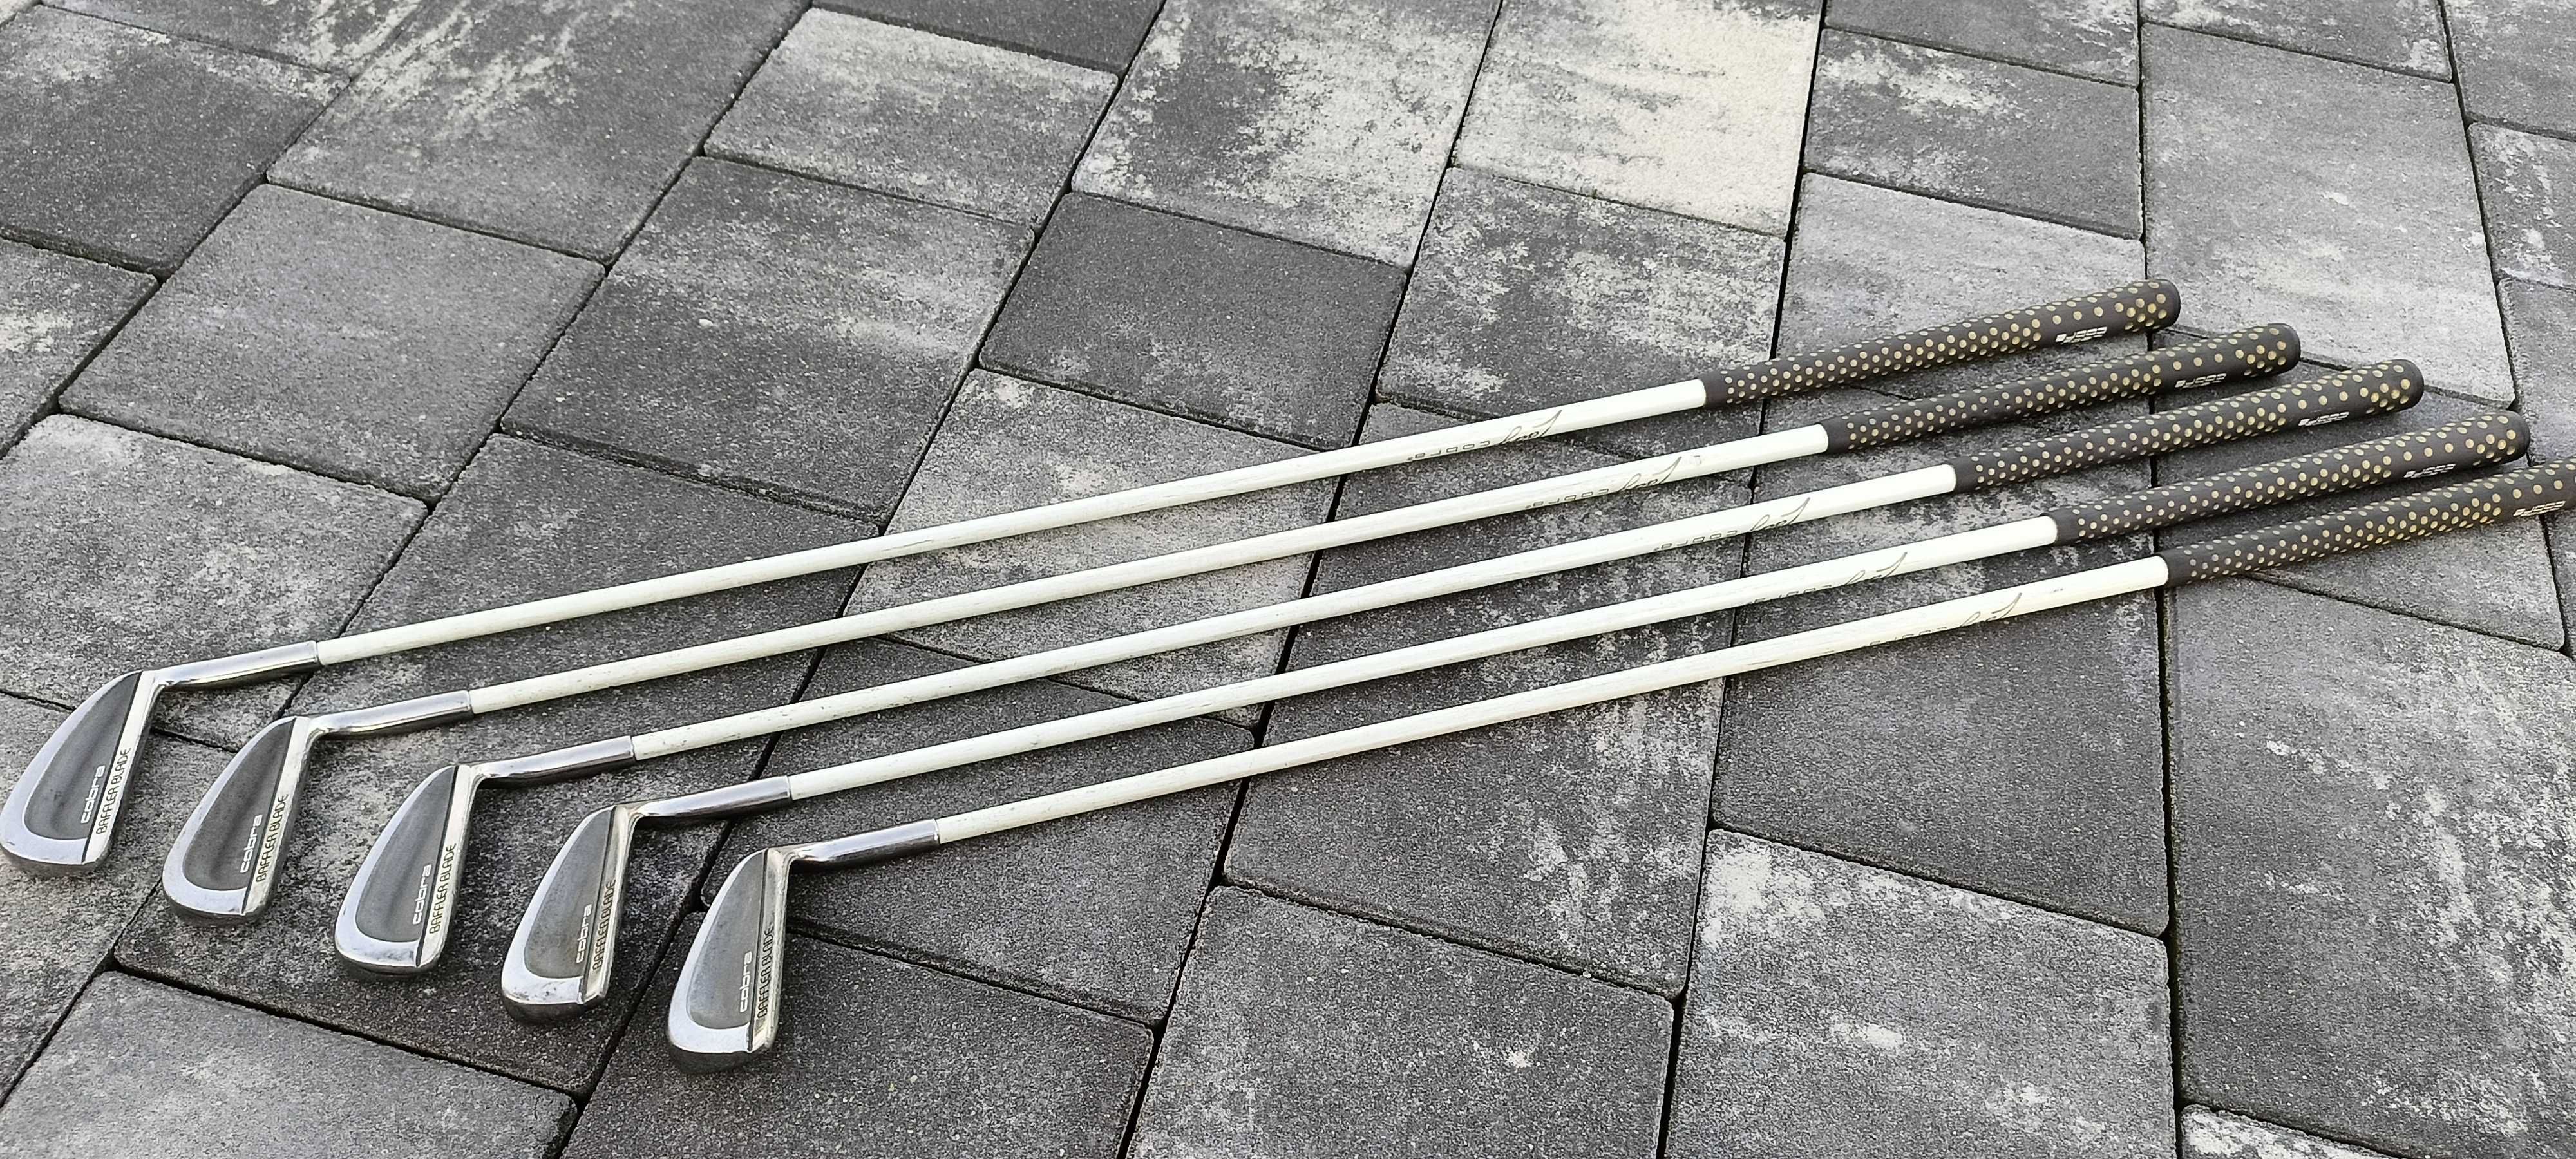 Cobra Baffler Blade AMS 5355 zestaw kijów do golfa kije golf golfowe